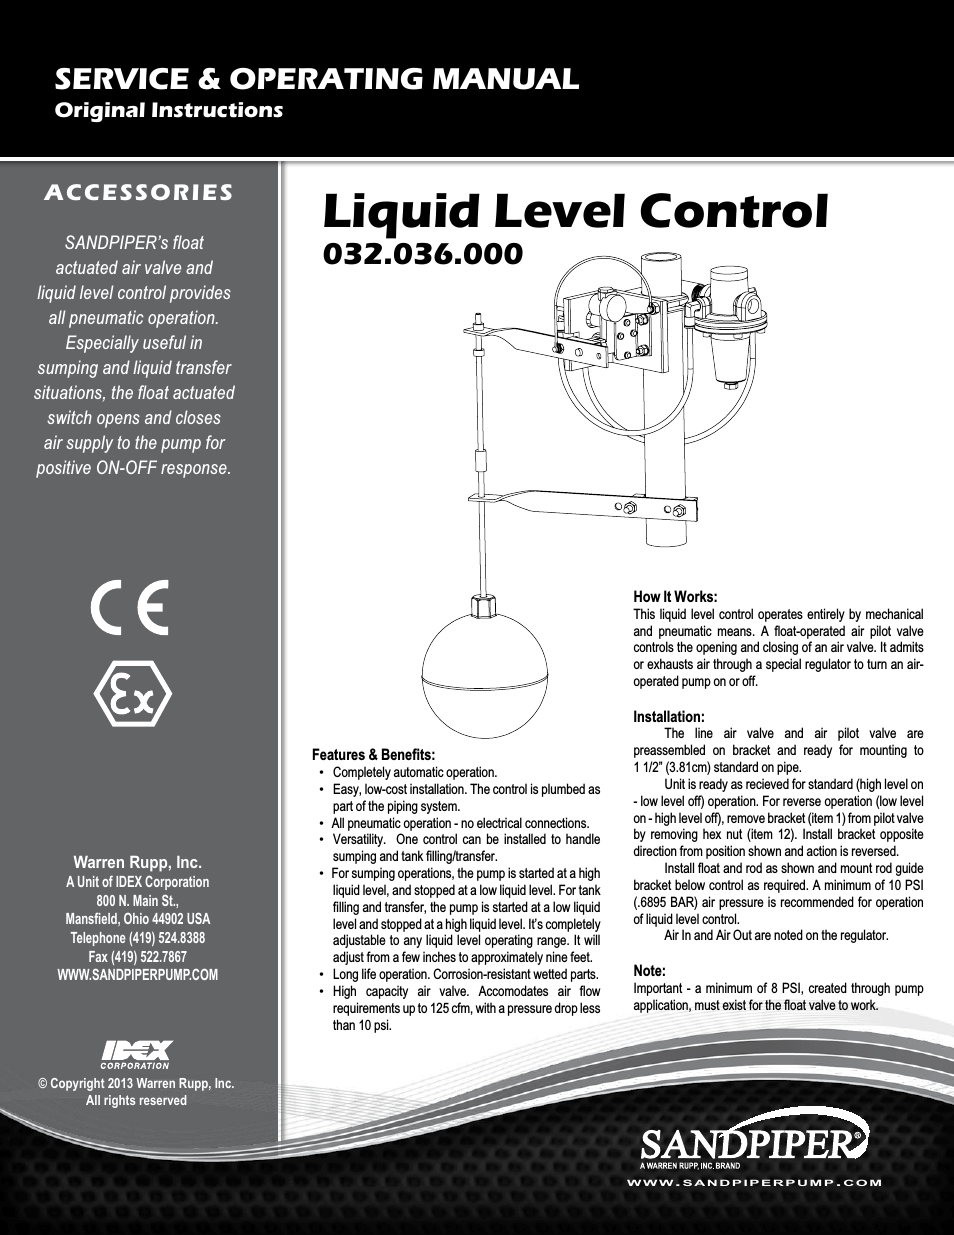 Liquid Level Control 032.036.000